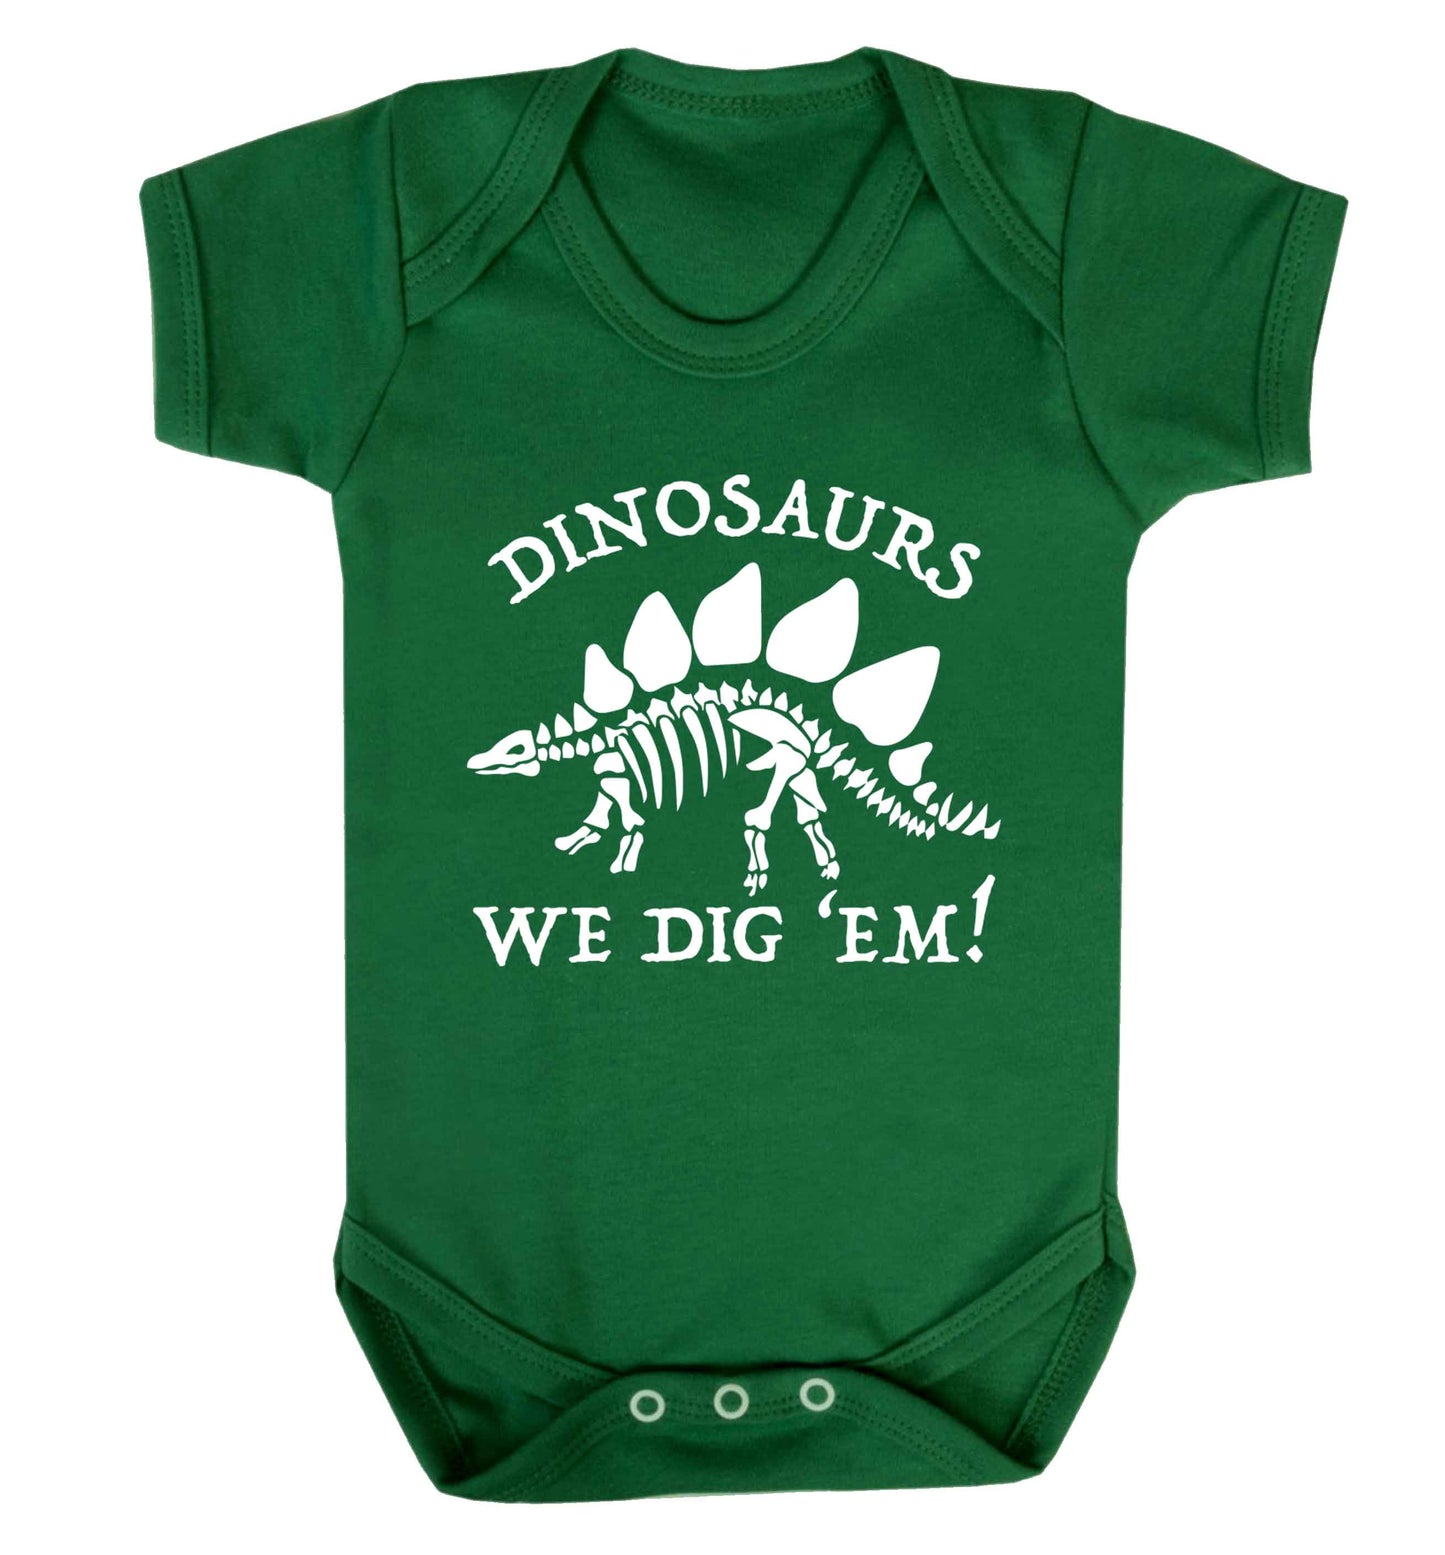 Dinosaurs we dig 'em! Baby Vest green 18-24 months